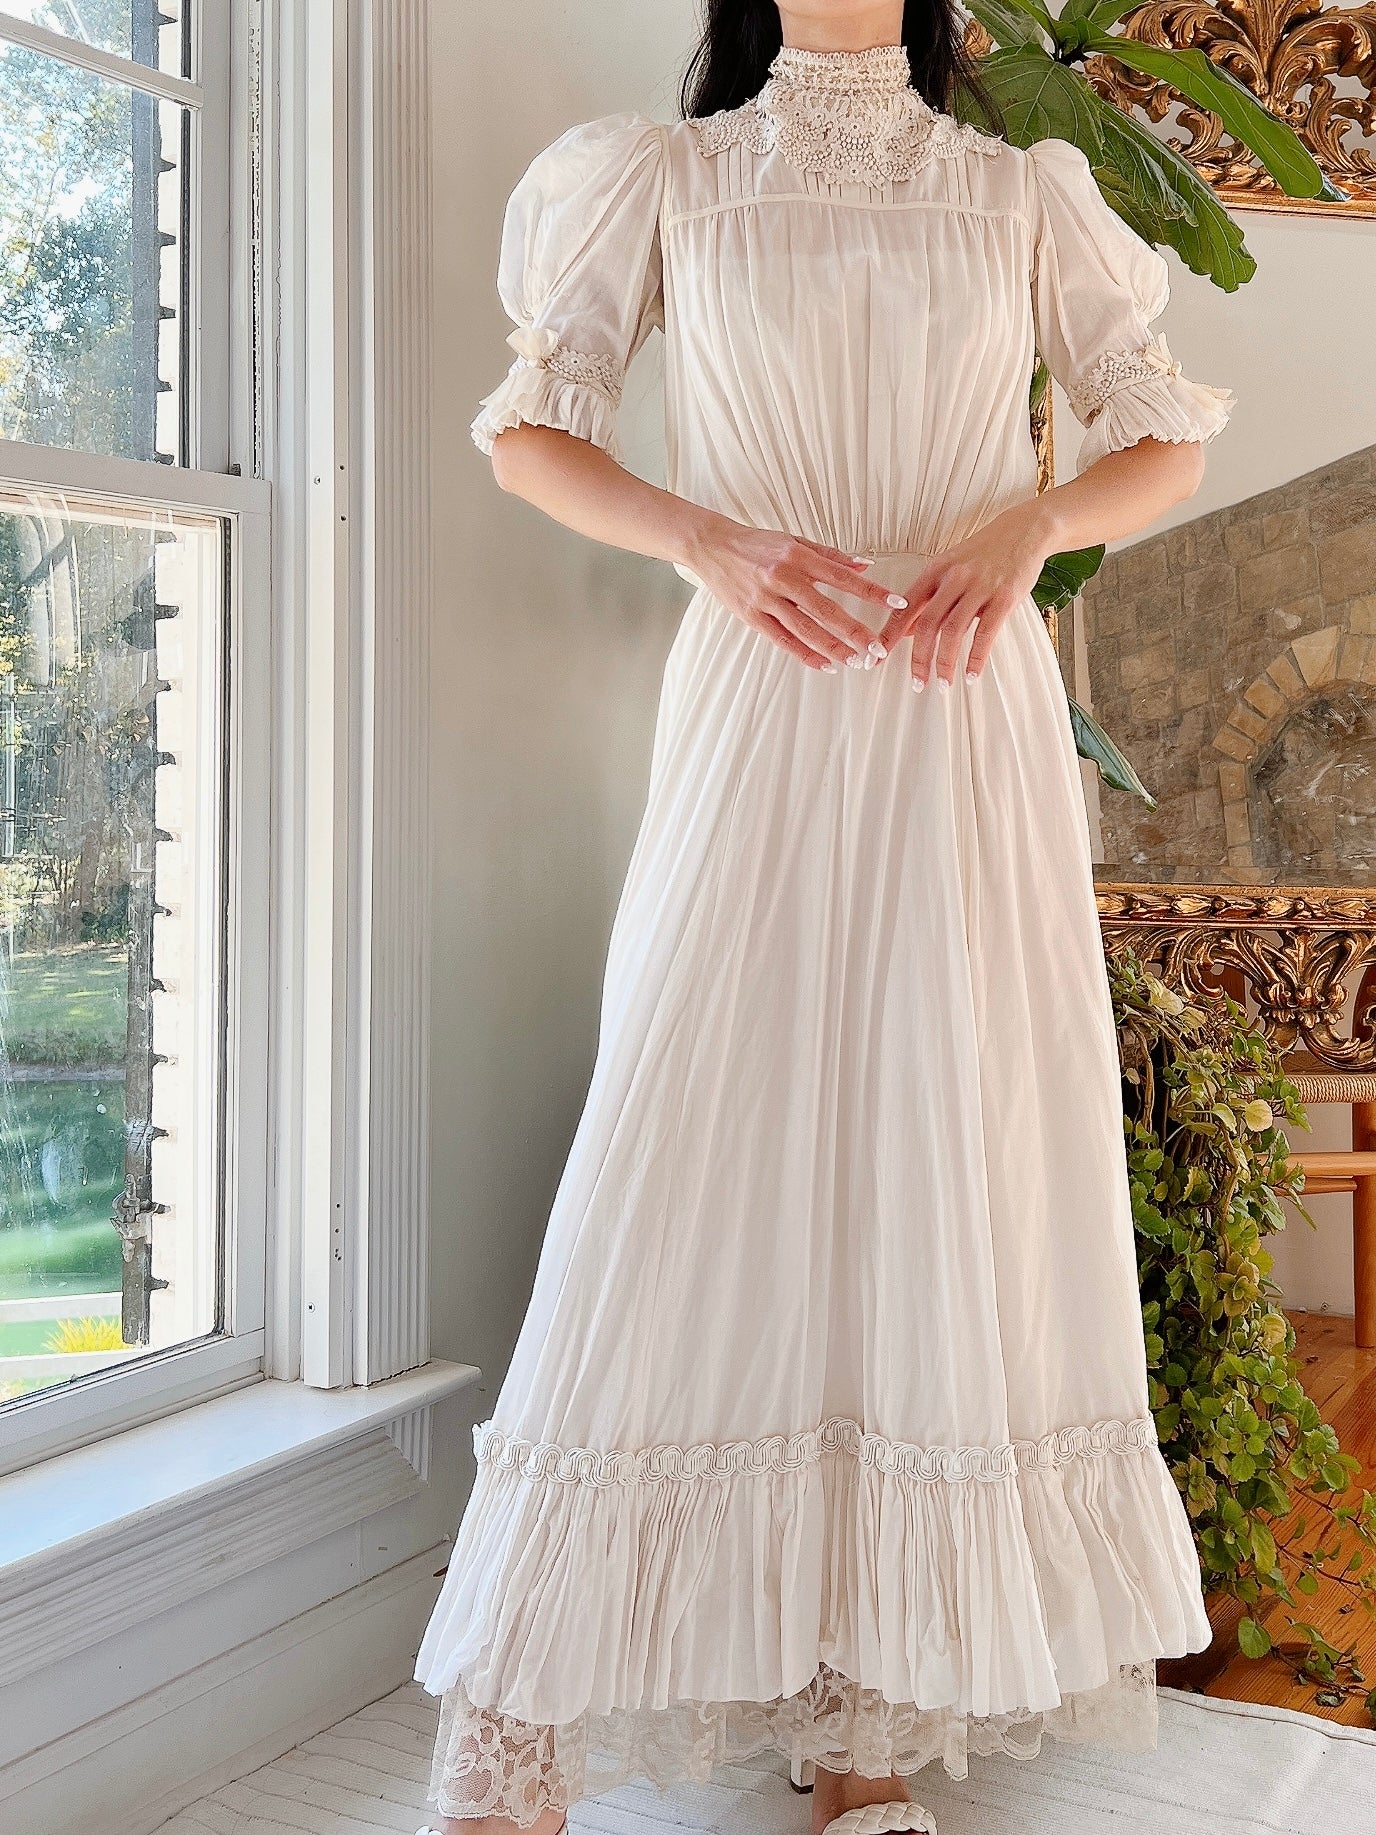 Vintage Silk/Cotton High Neck Dress - XS | G O S S A M E R